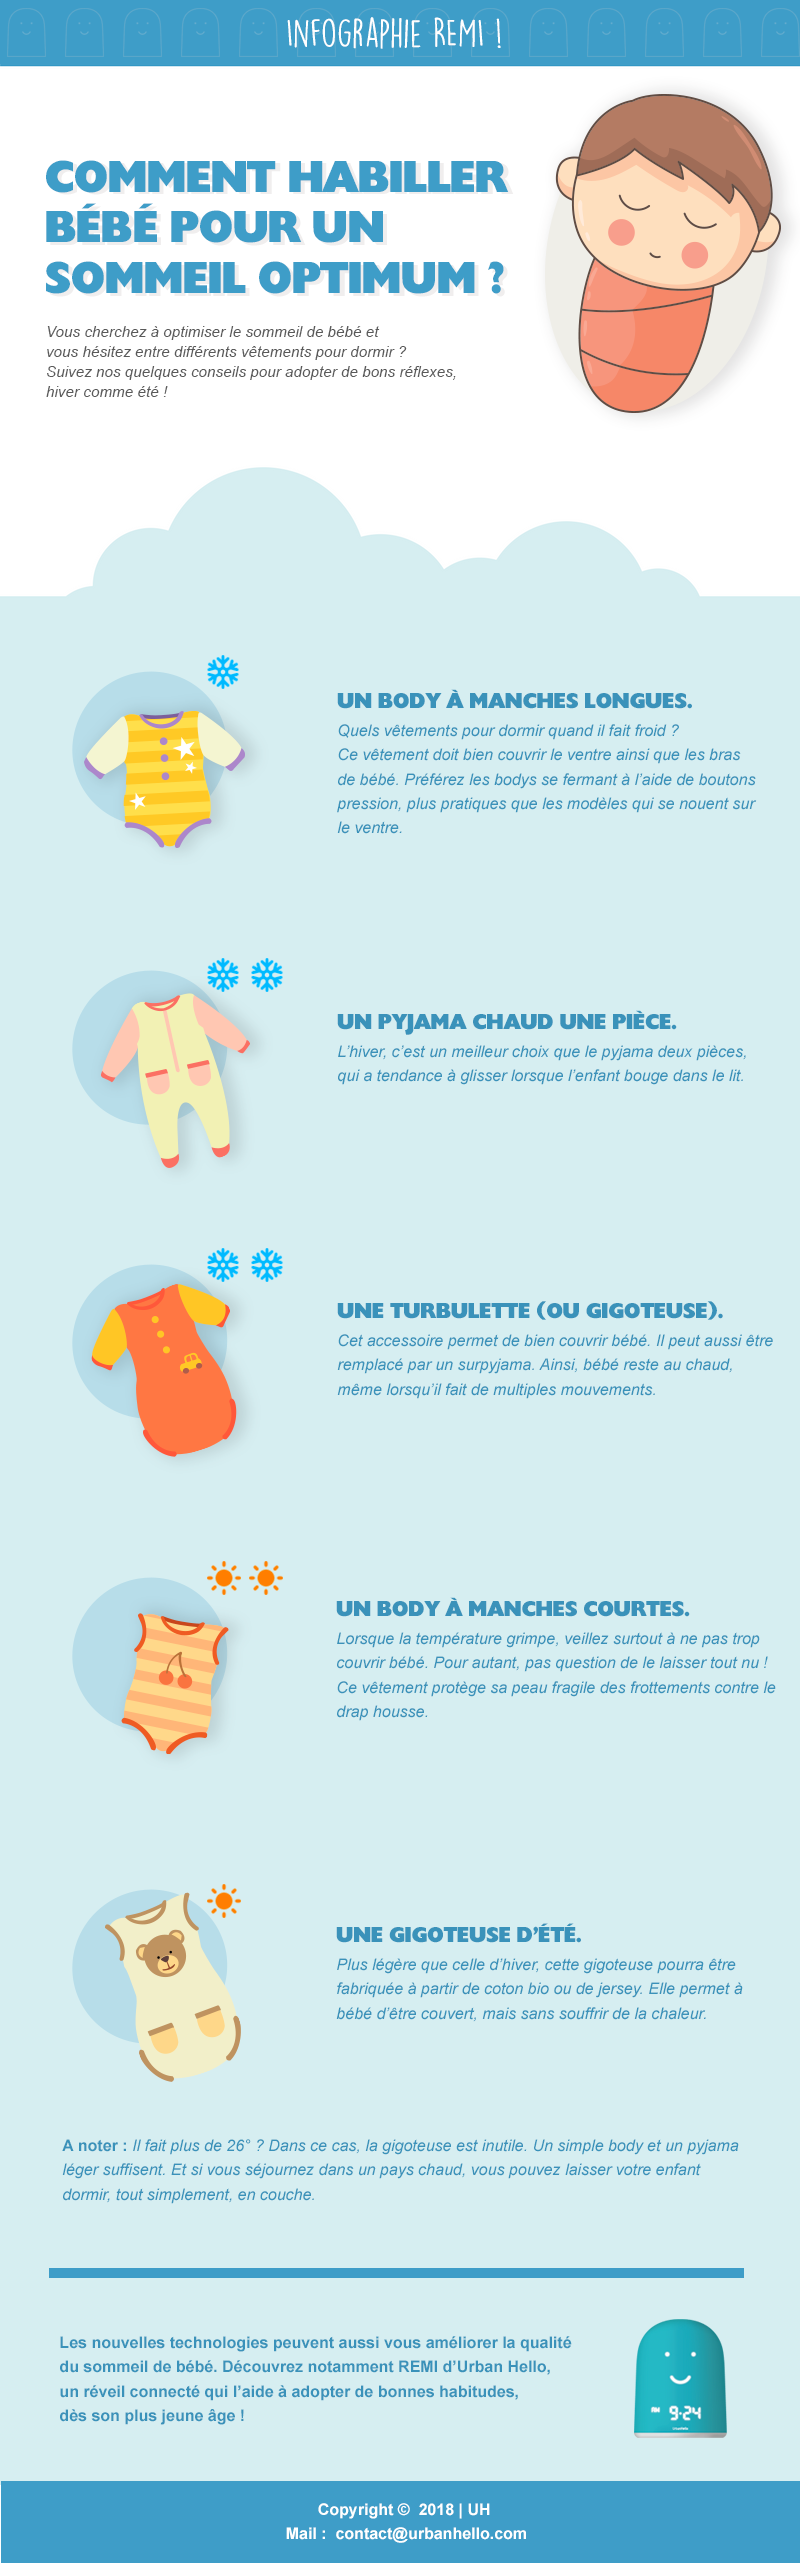 Infographie : comment habiller bébé pour dormir